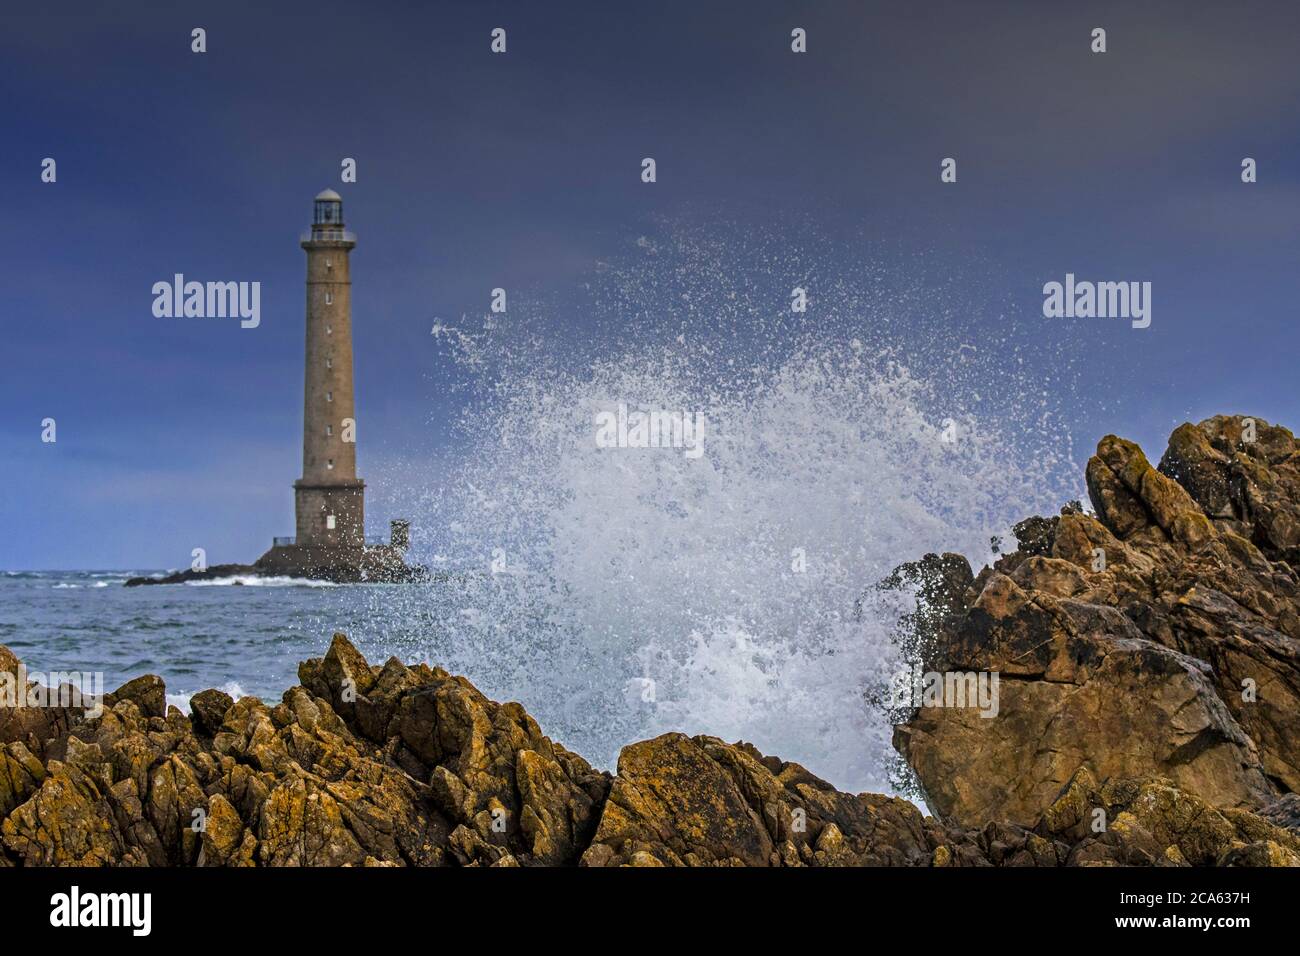 Les vagues s'écrasant sur le rocher et le phare Phare de la Hague / Phare de Goury près d'Auderville, Cap de la Hague, péninsule du Cotentin, Basse-Normandie, France Banque D'Images